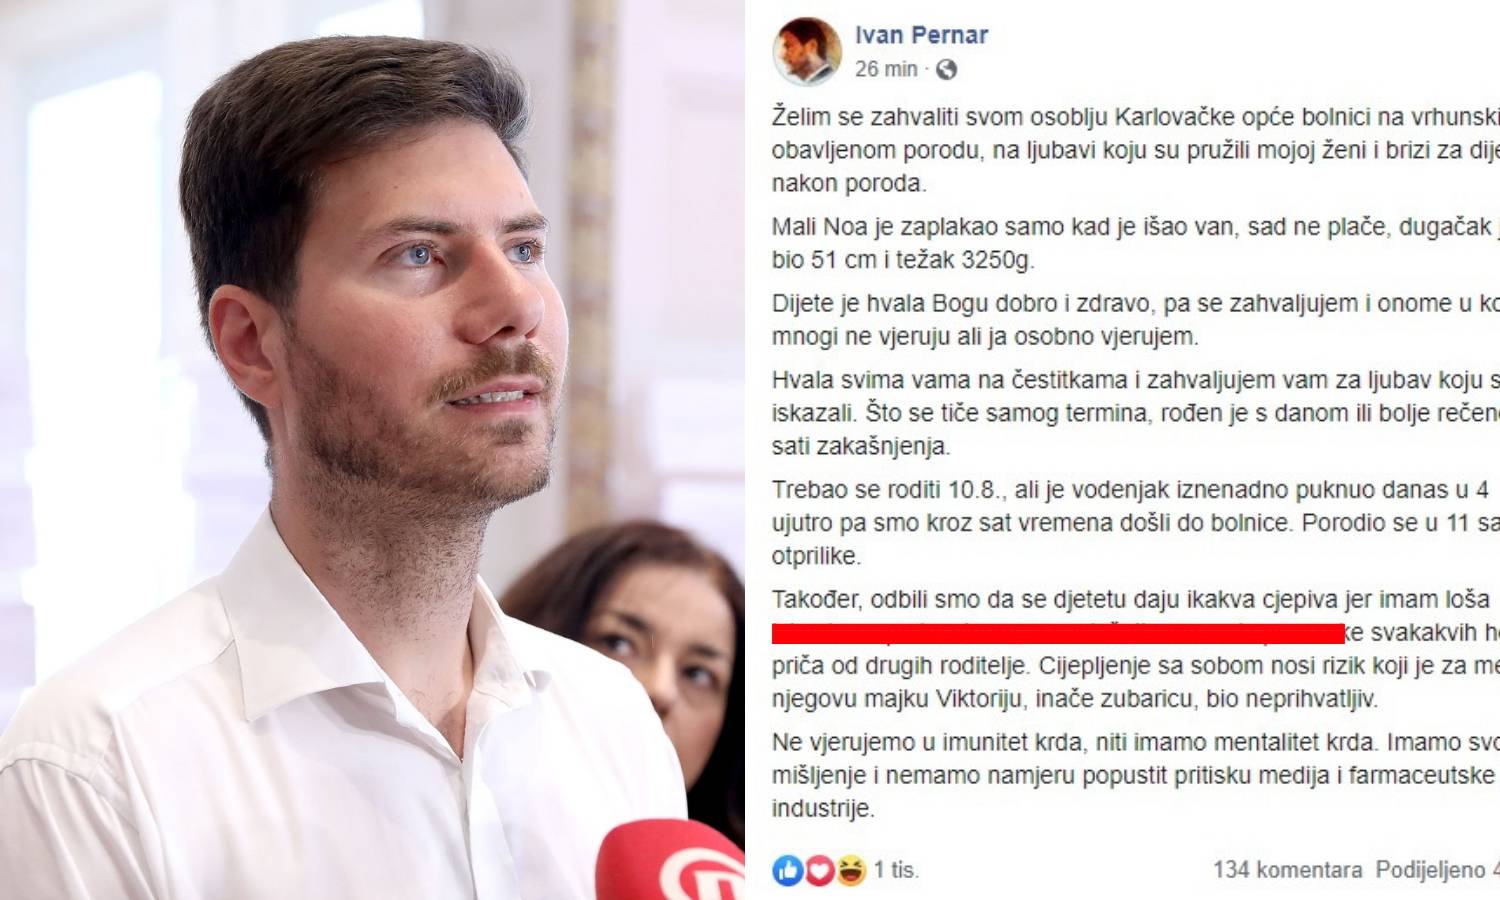 Pernar je dobio sina i odbija ga cijepiti: Odbili smo i vitamin K